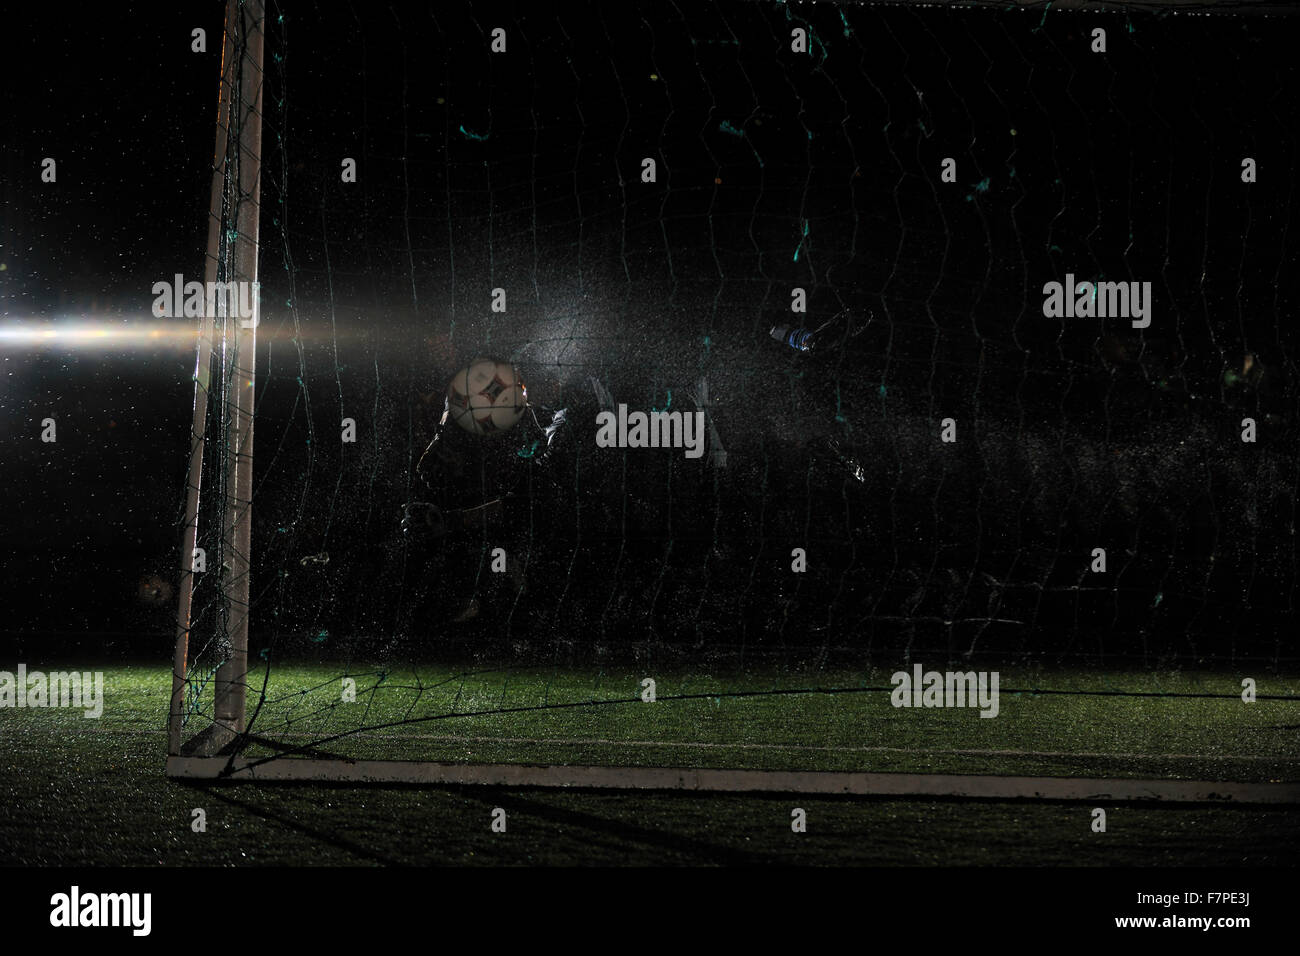 Fußball Fußball-Torwart in der Nacht mit Regen Stockfoto